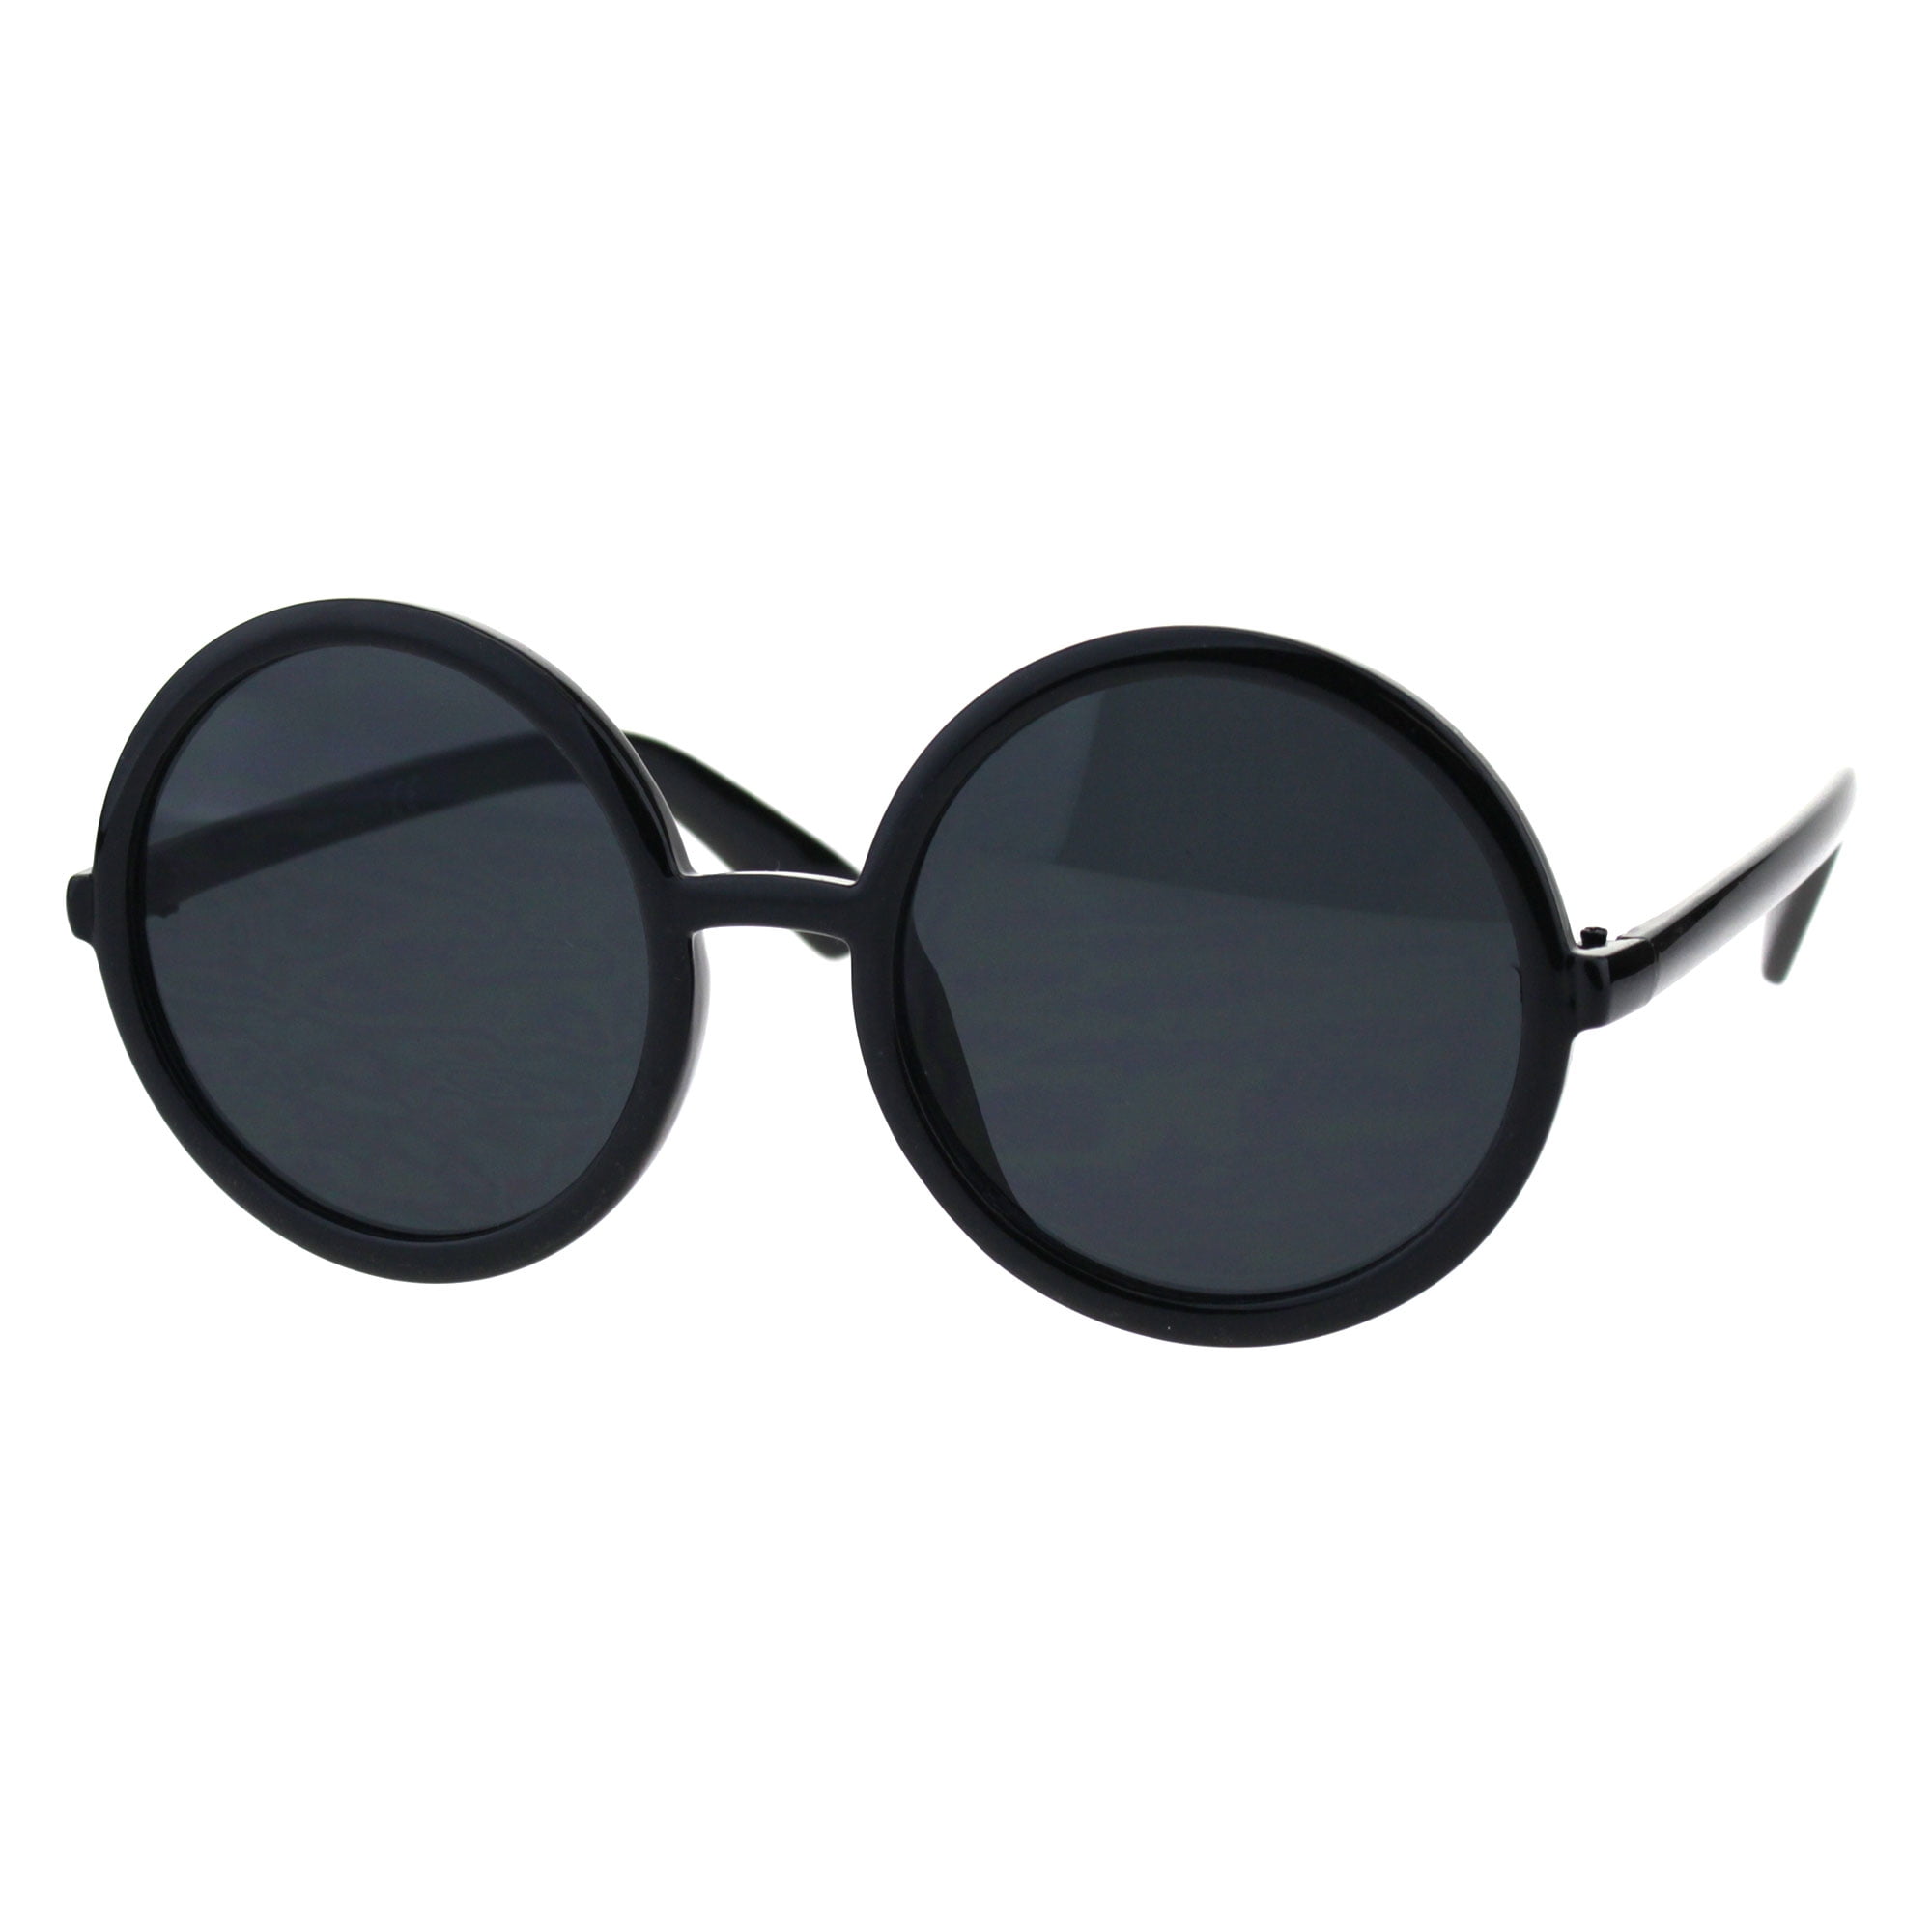 Details 227+ black lens sunglasses latest